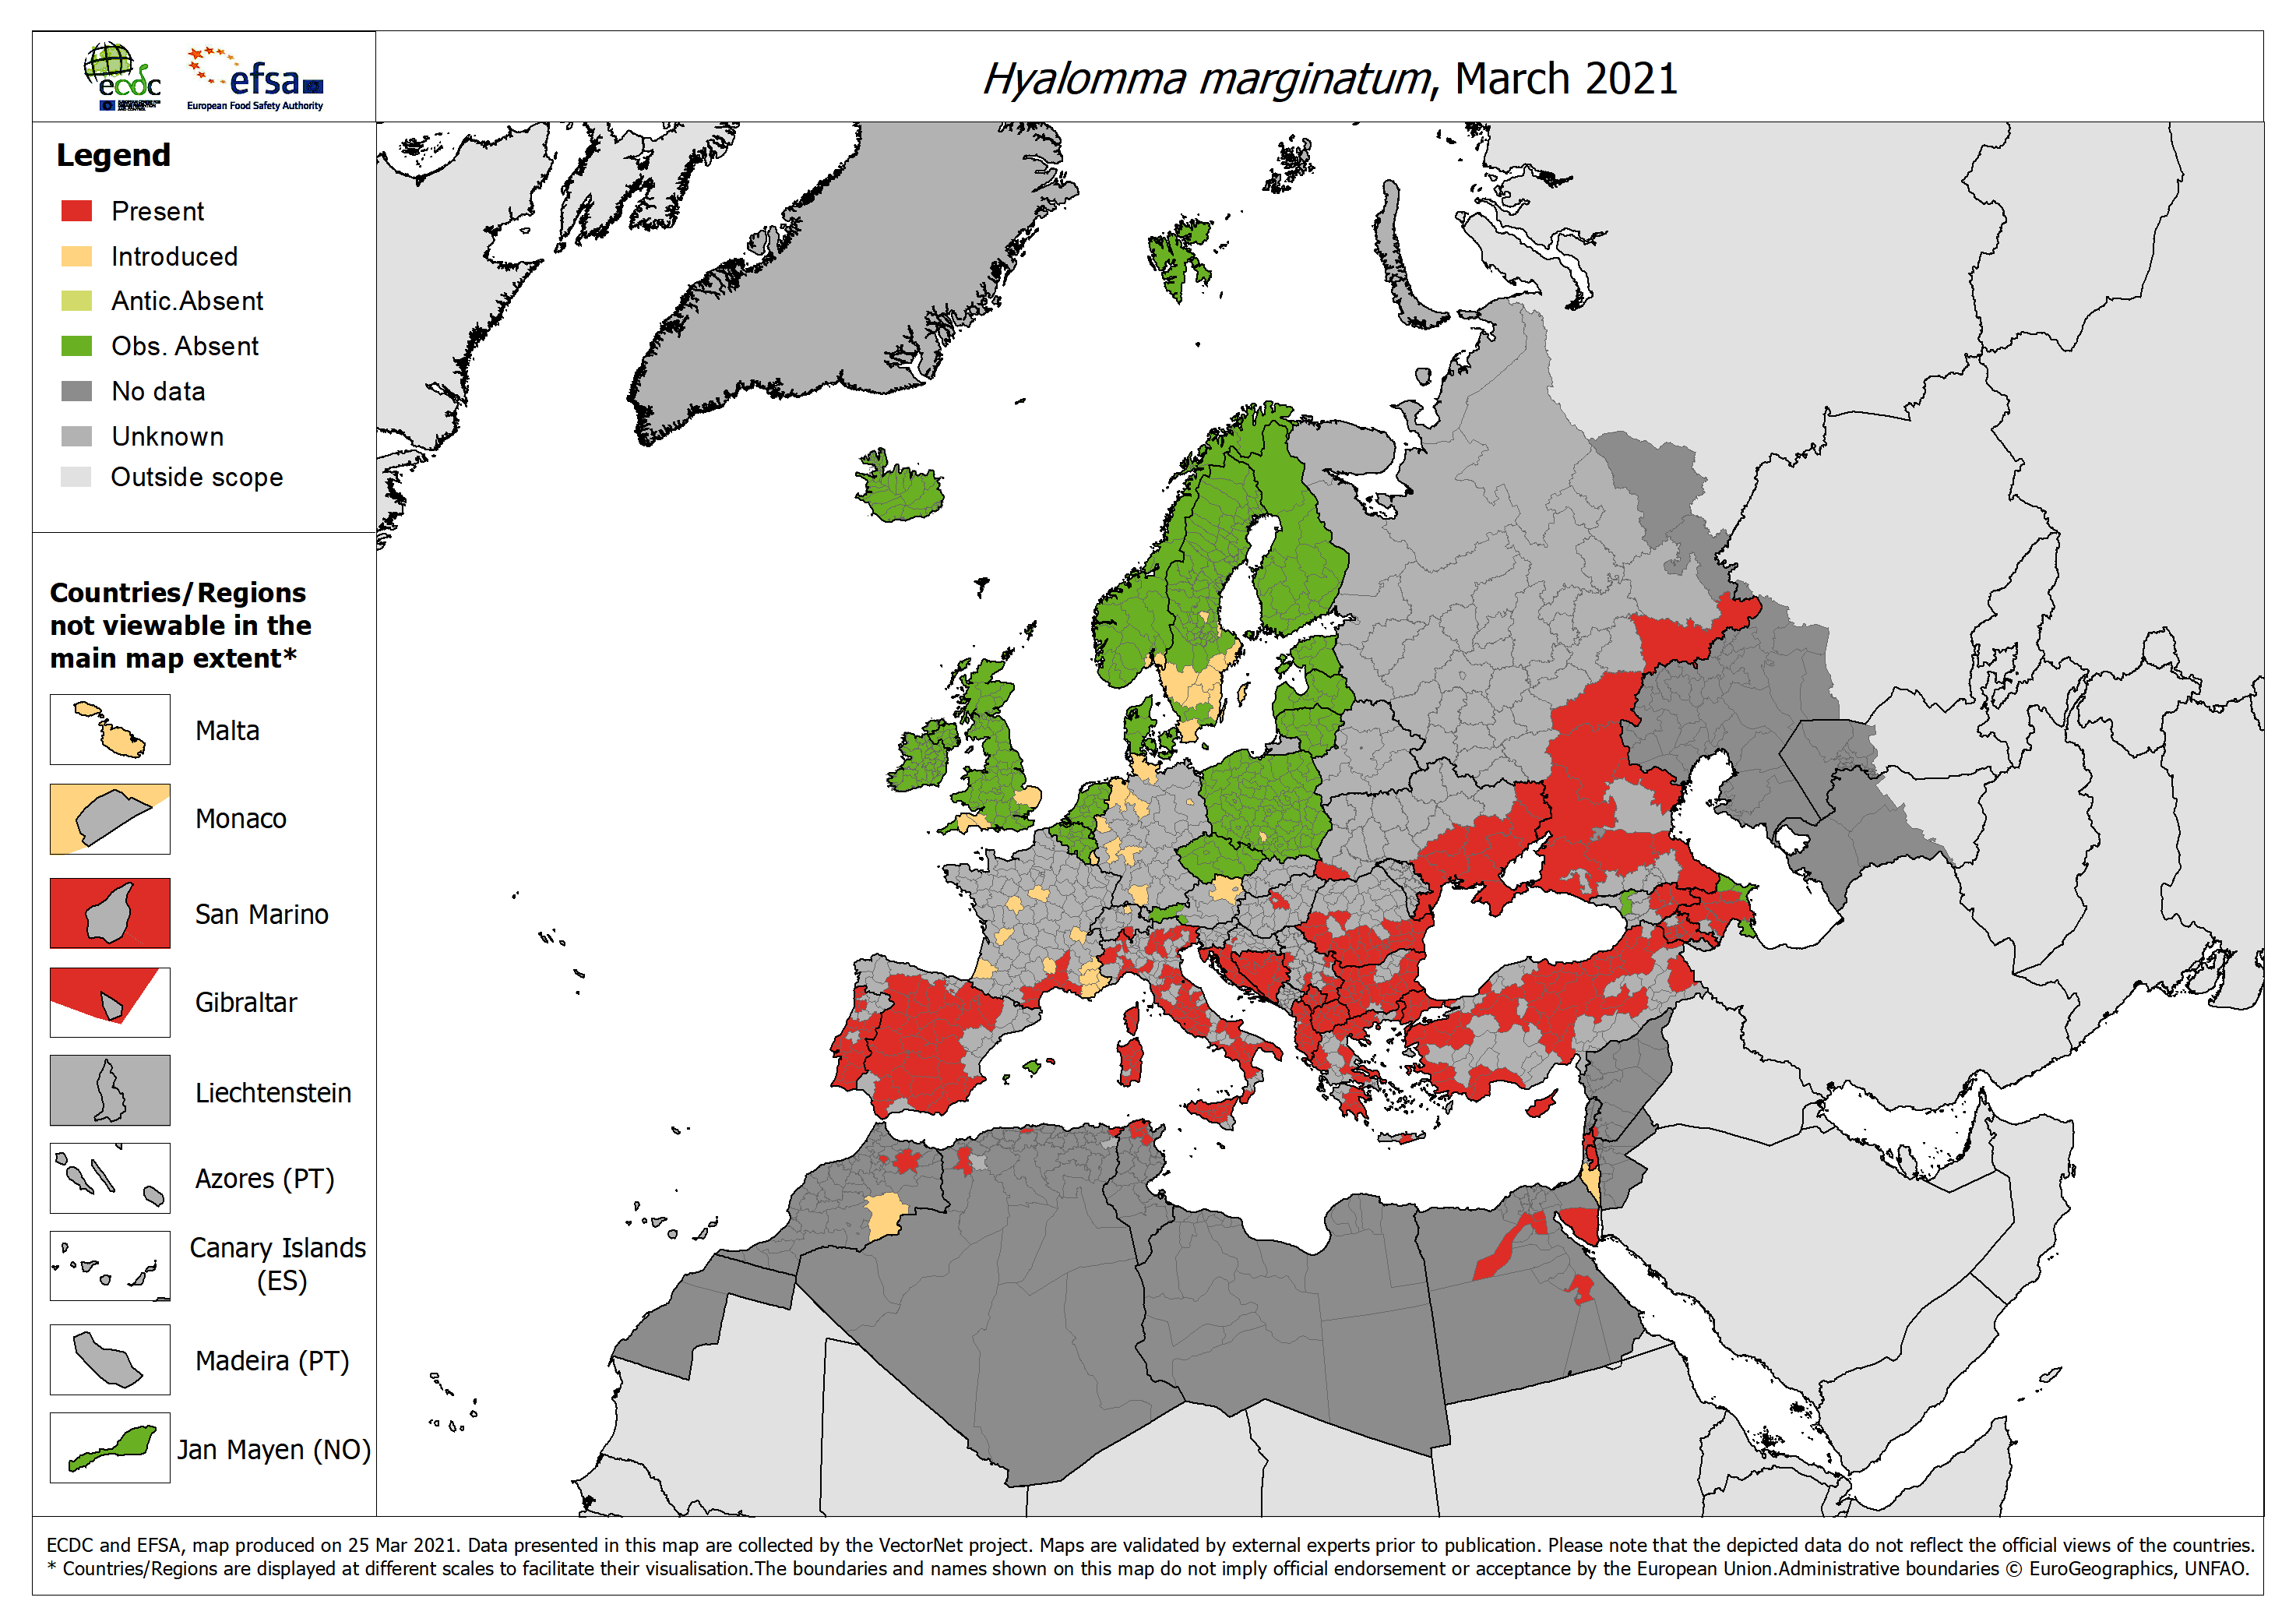 Distribution de Hyalomma marginatum en Europe et sur le pourtour méditerranéen en mars 2021